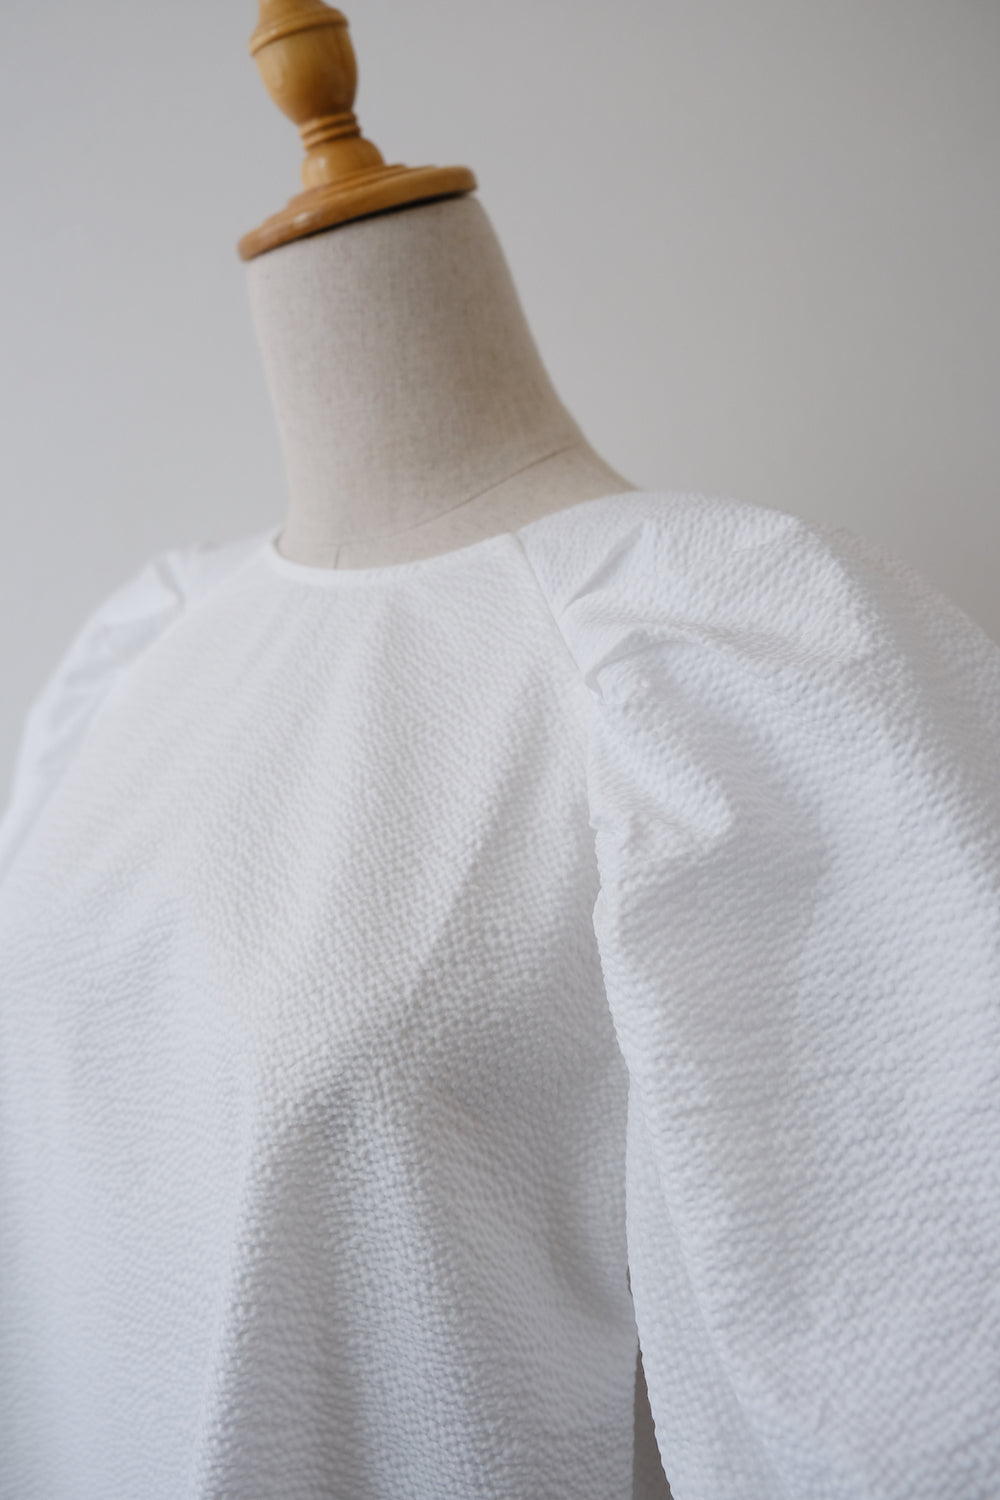 blouse white LA0132